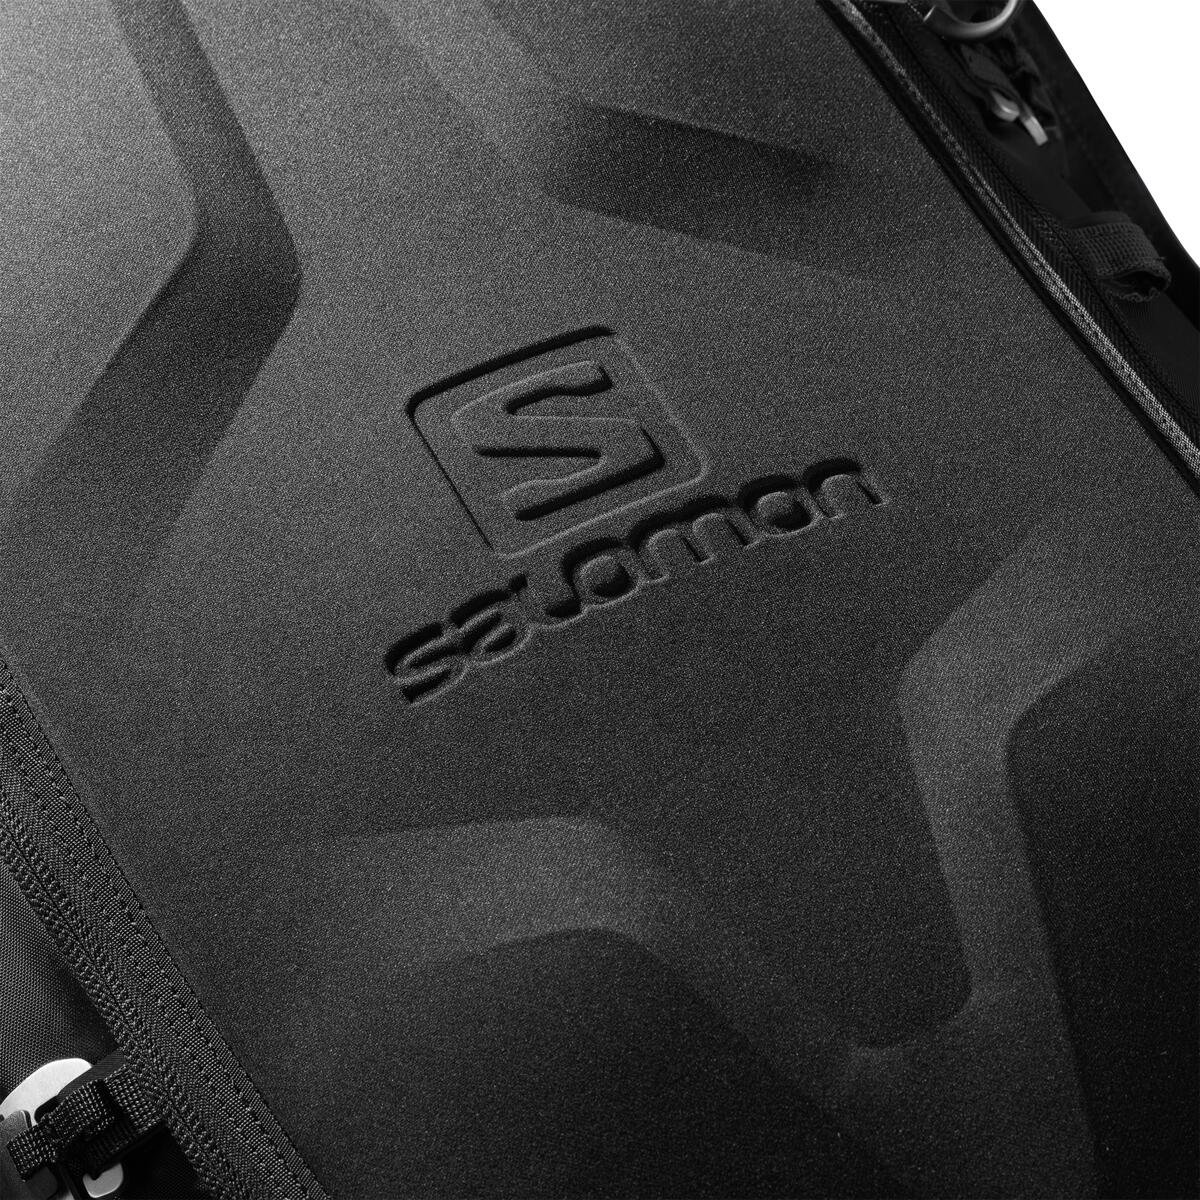 Batoh Salomon Mtn 45 - černá